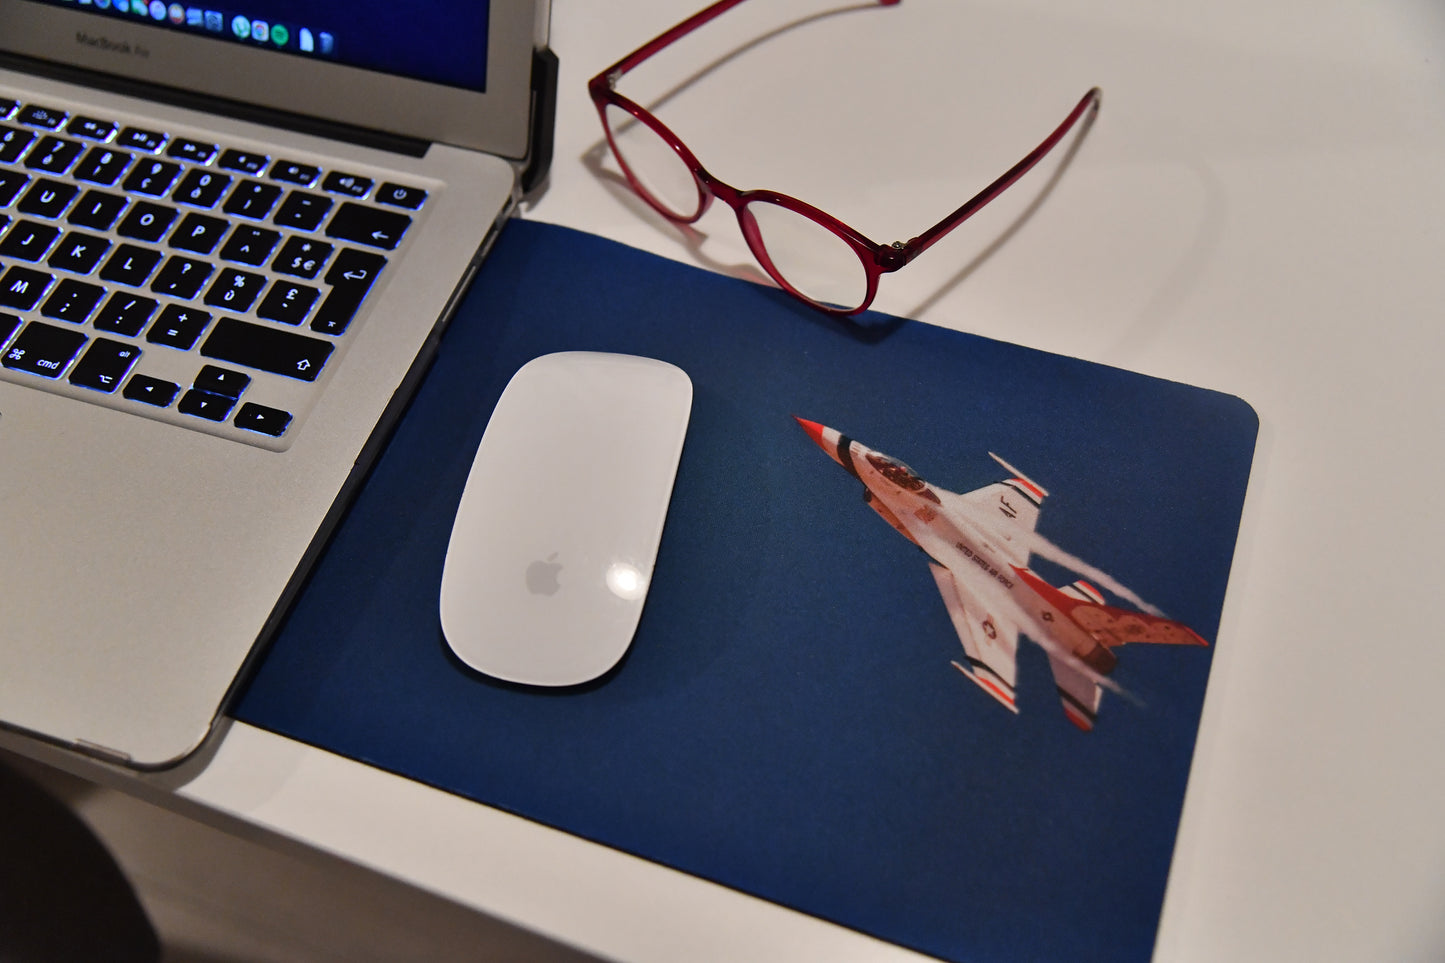 Poza de prezentare cu mouse-pad pe birou